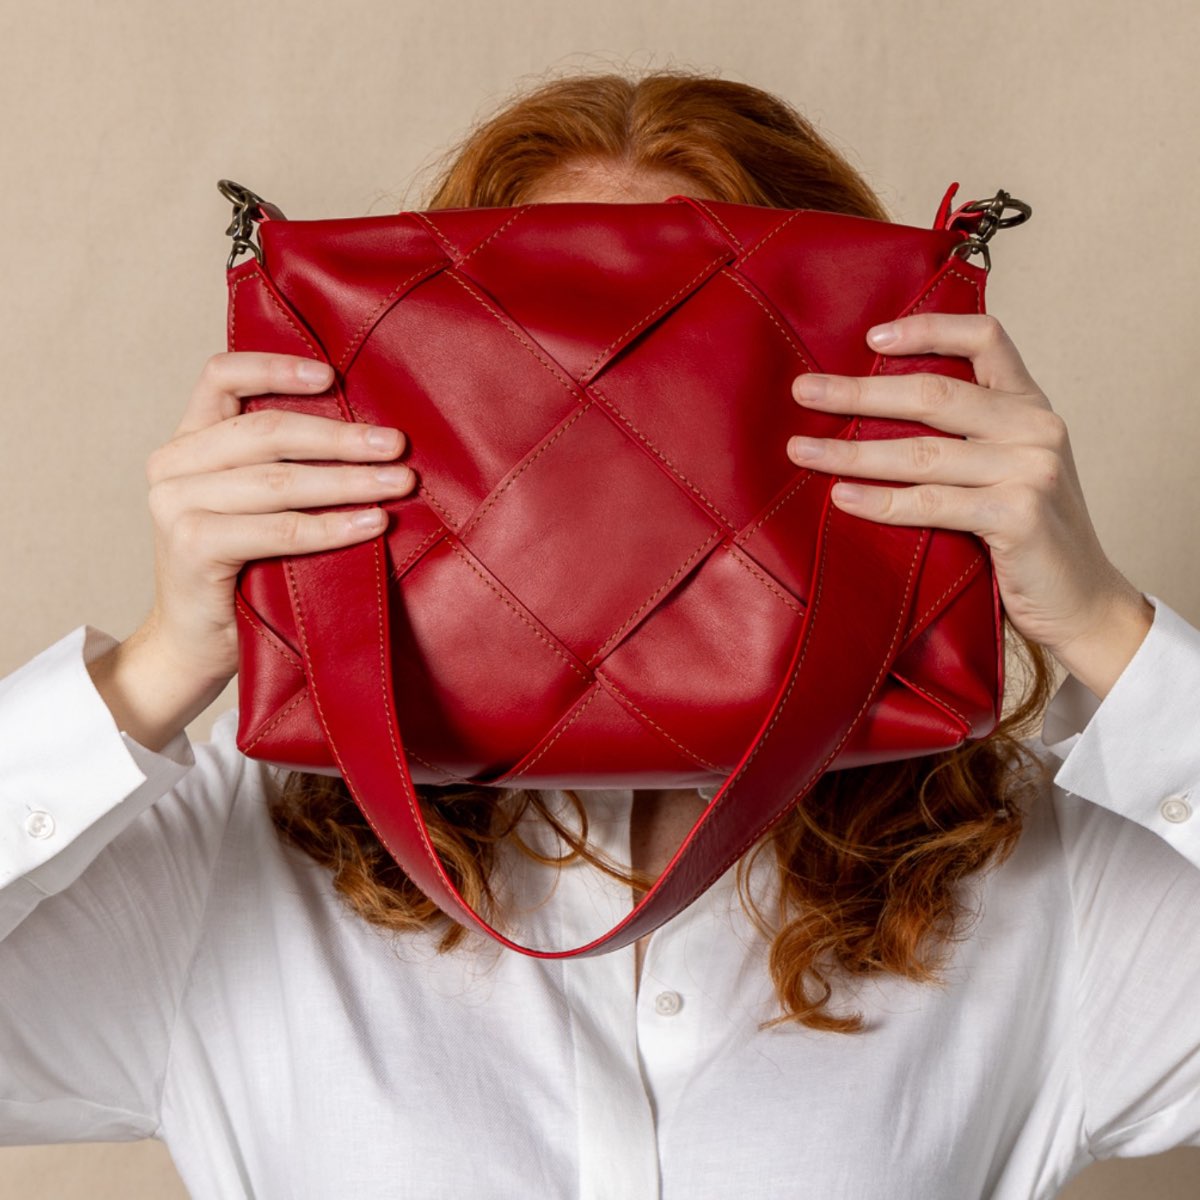 red optimal shoulder bag held in front of models face.